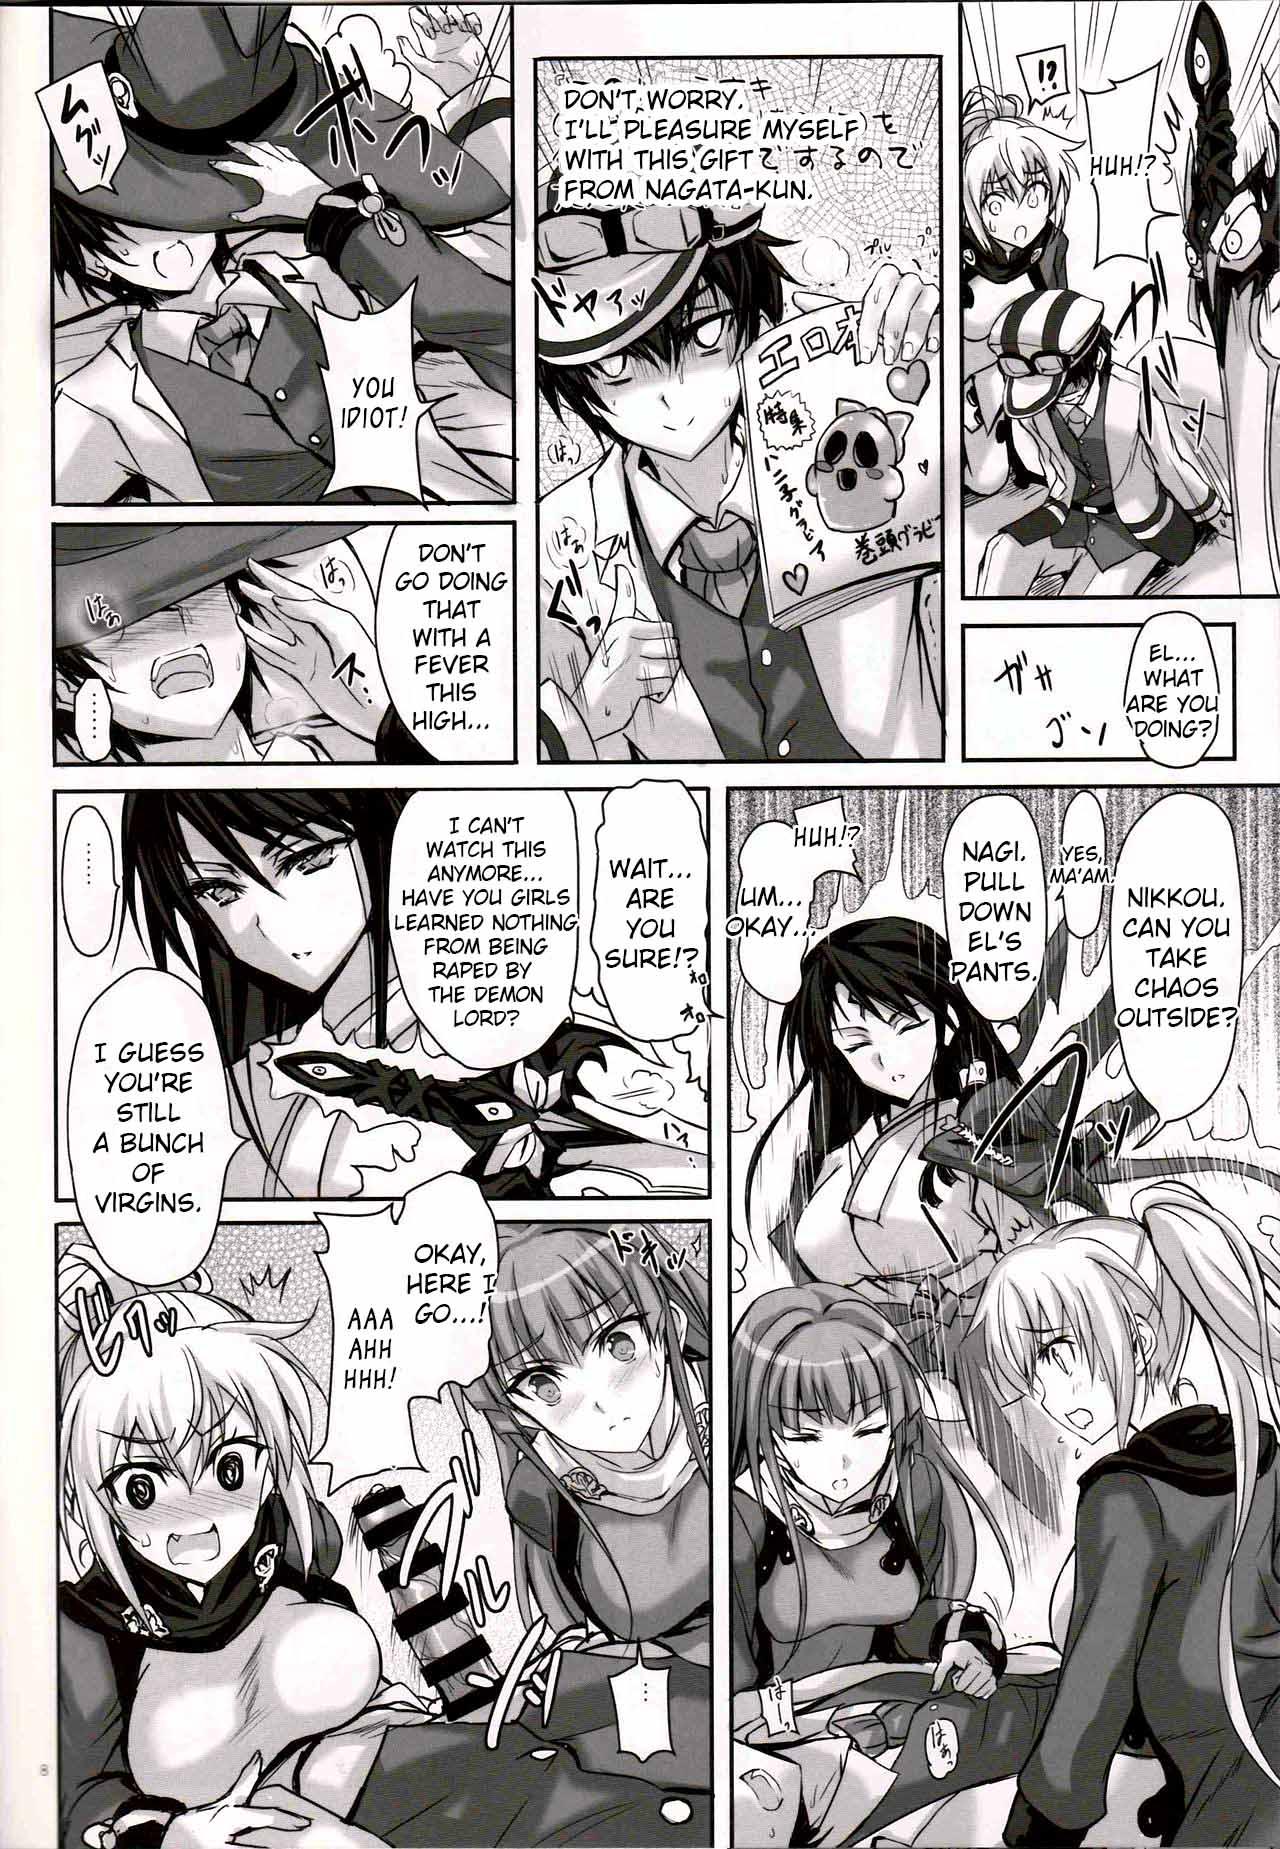 Wet Anata no, Yasashikute Daisuki na Onee-chans. - Rance Novinha - Page 7